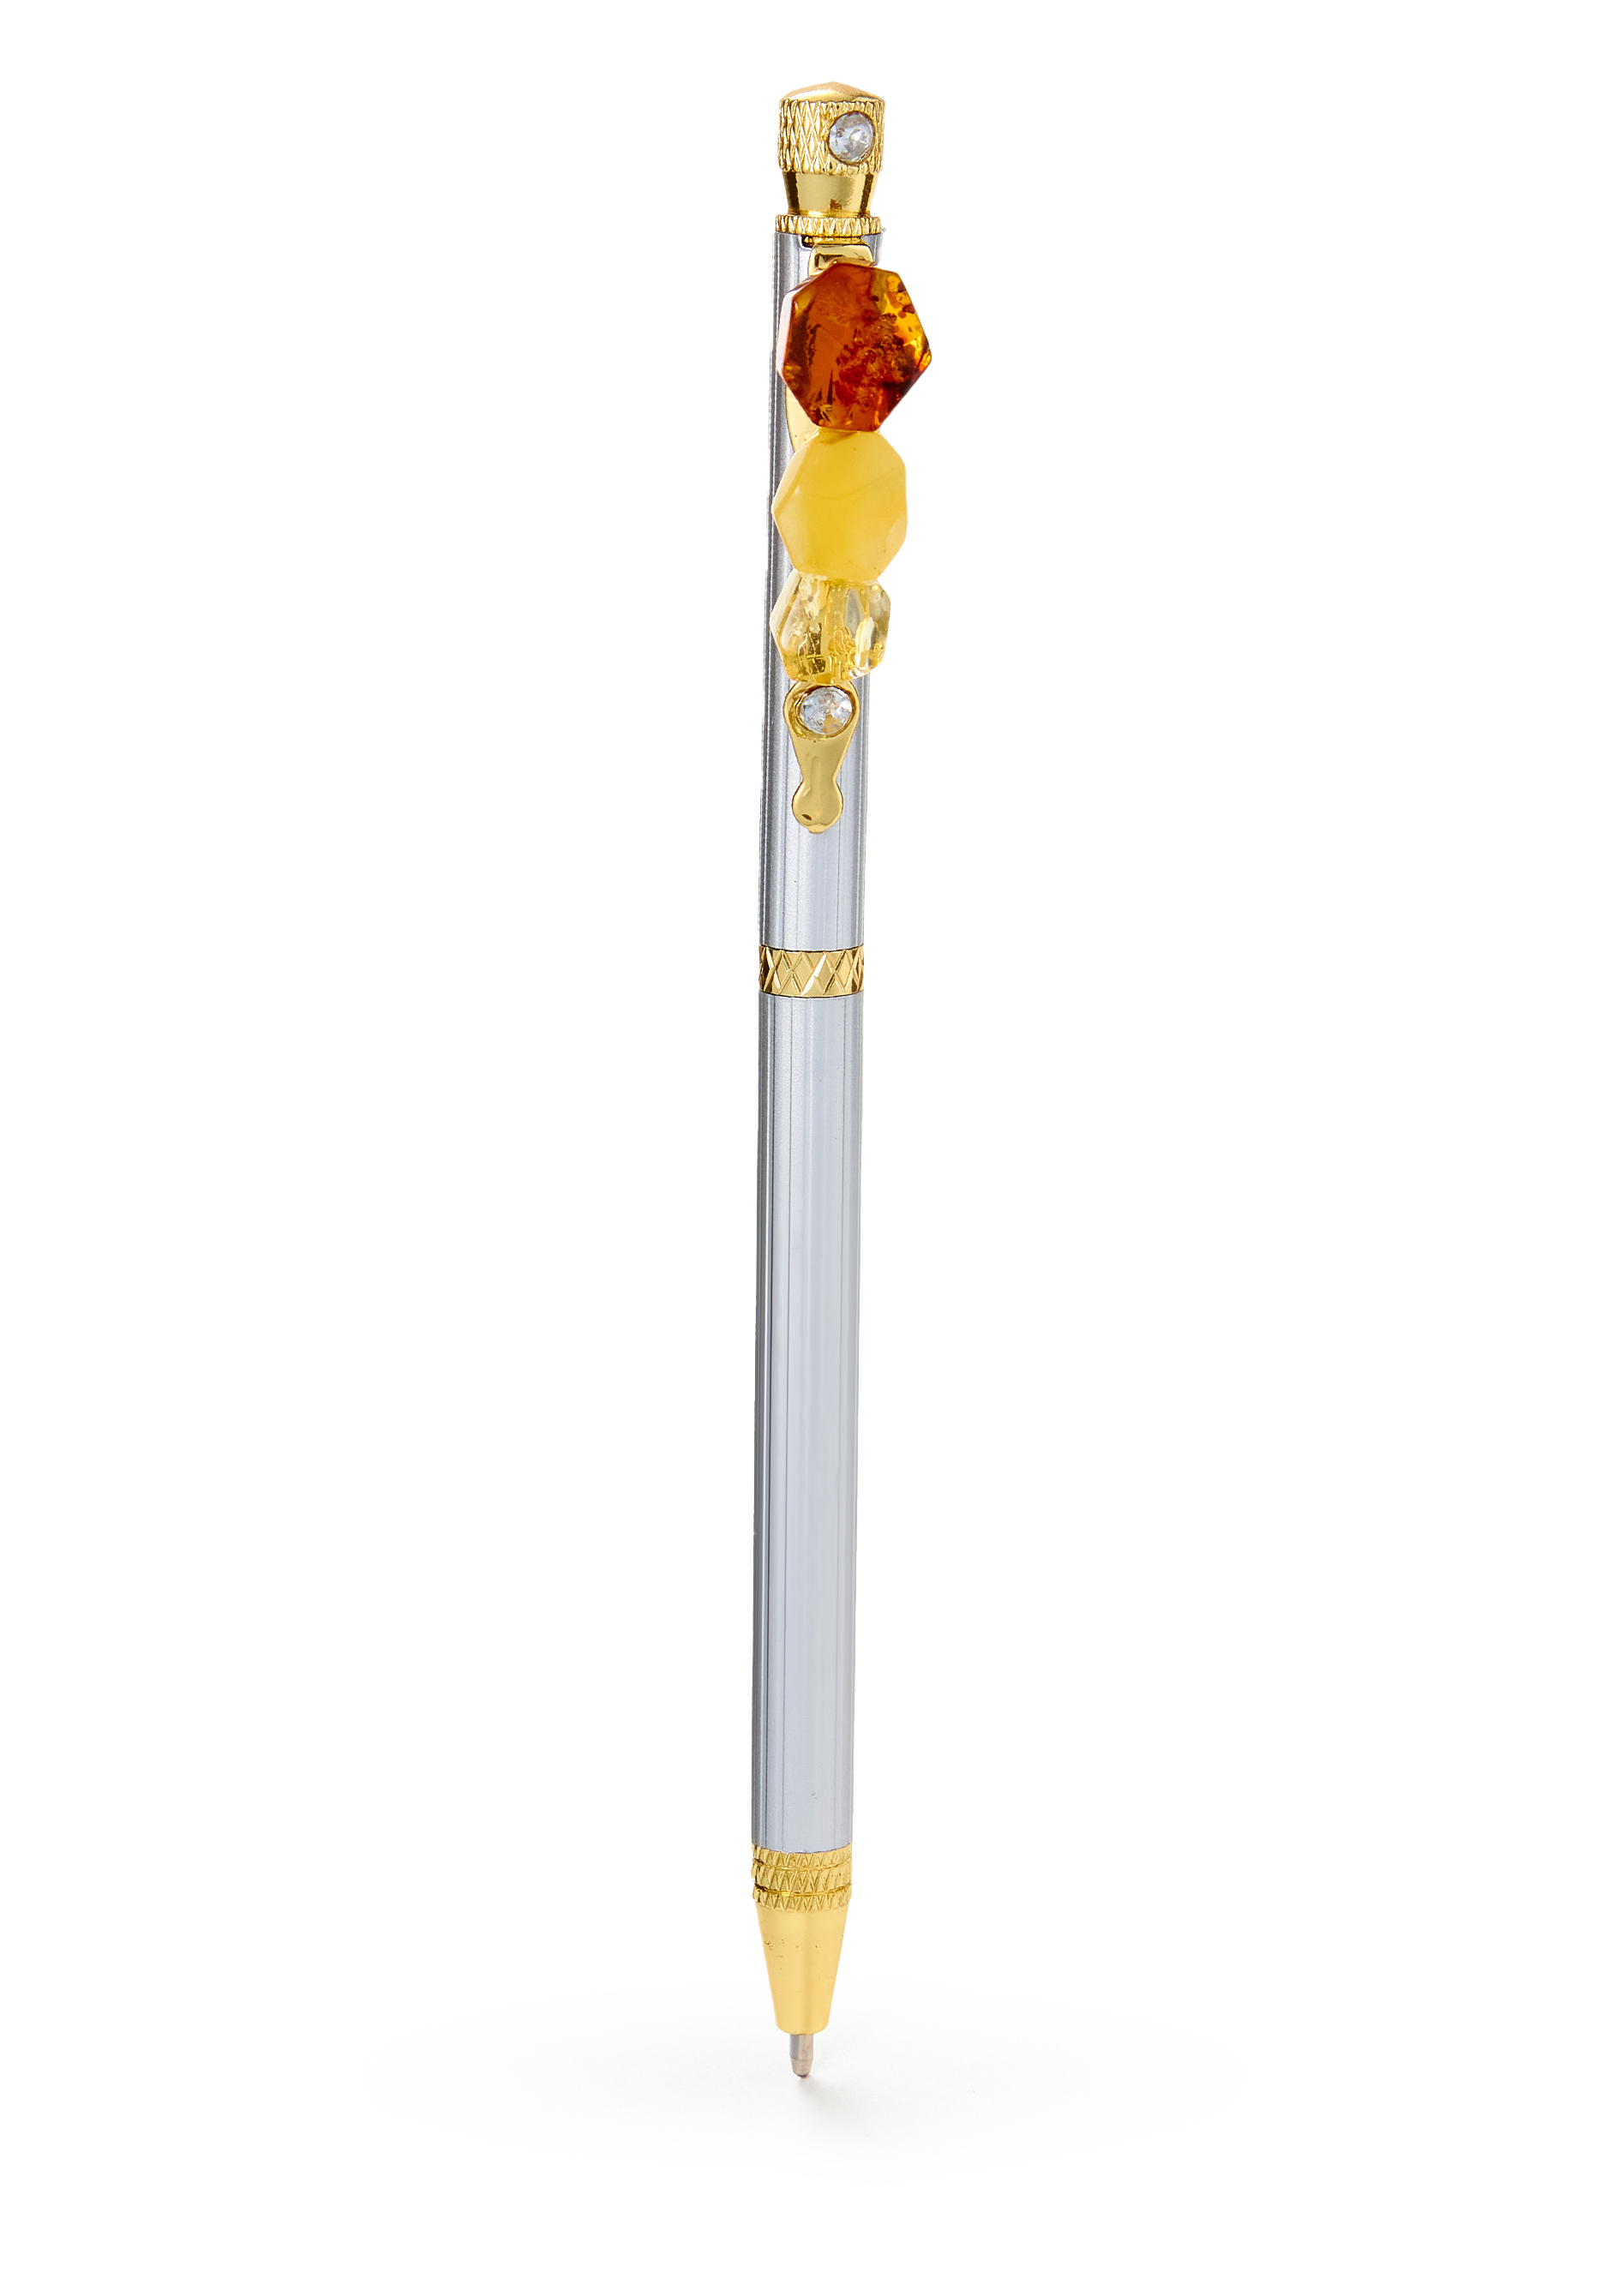 Ручка с янтарем factory brass ручка роллерная